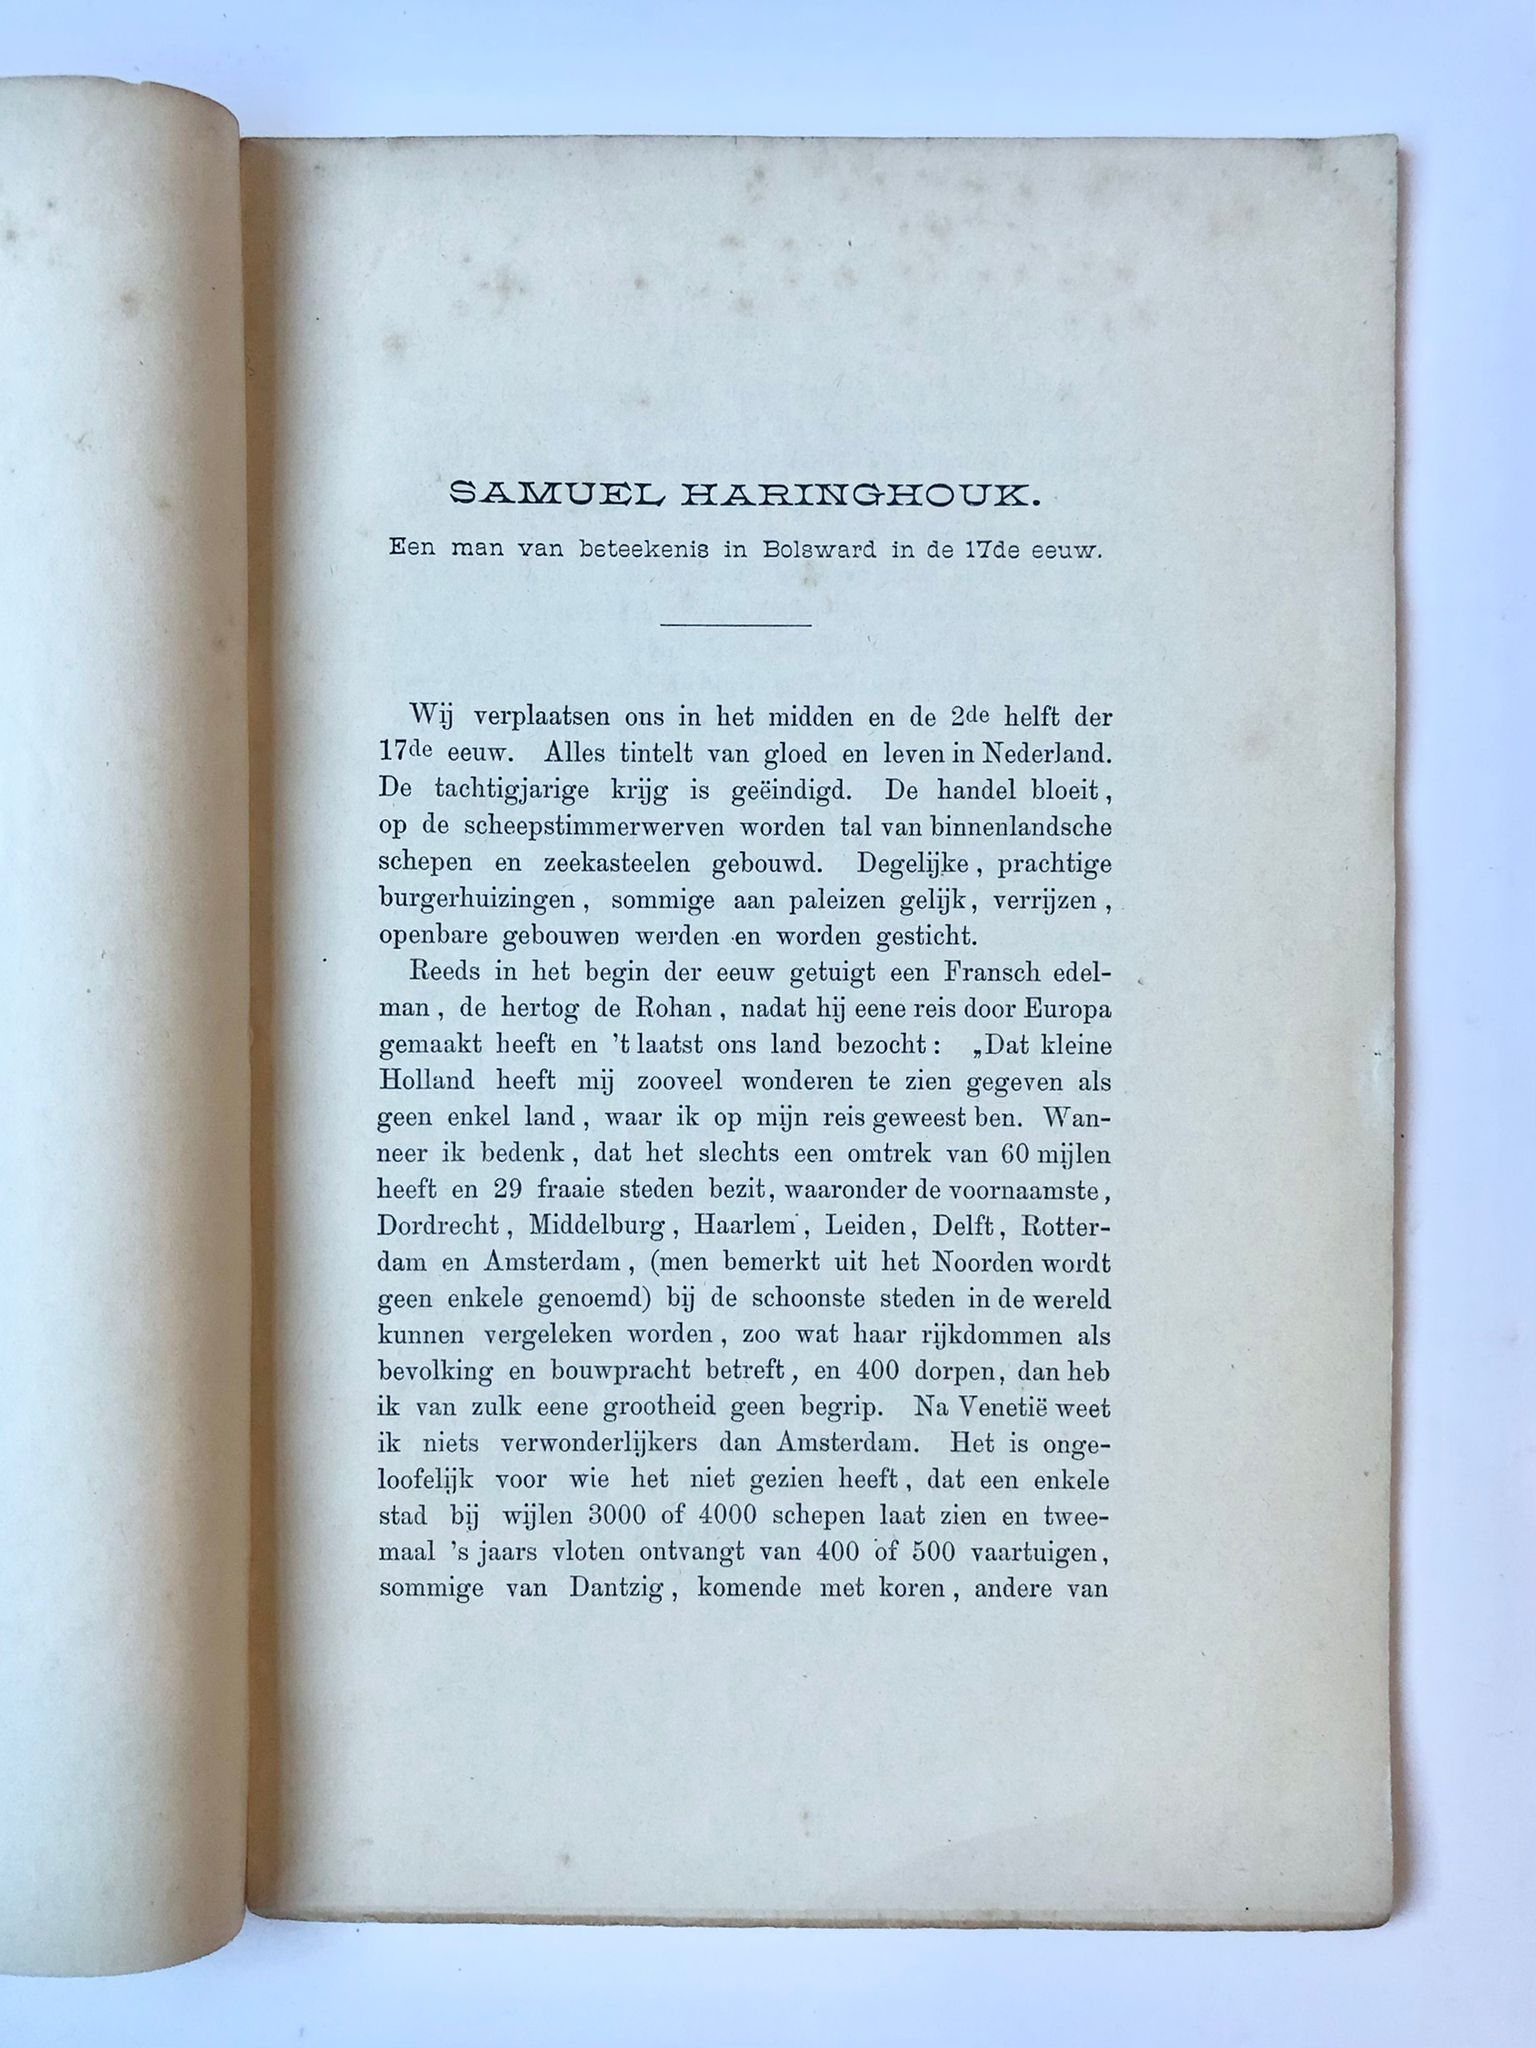 [Bolsward] Samuel Haringhouk. Een man van beteekenis in Bolsward, in de 17e Eeuw, Bolsward, 72 pp.